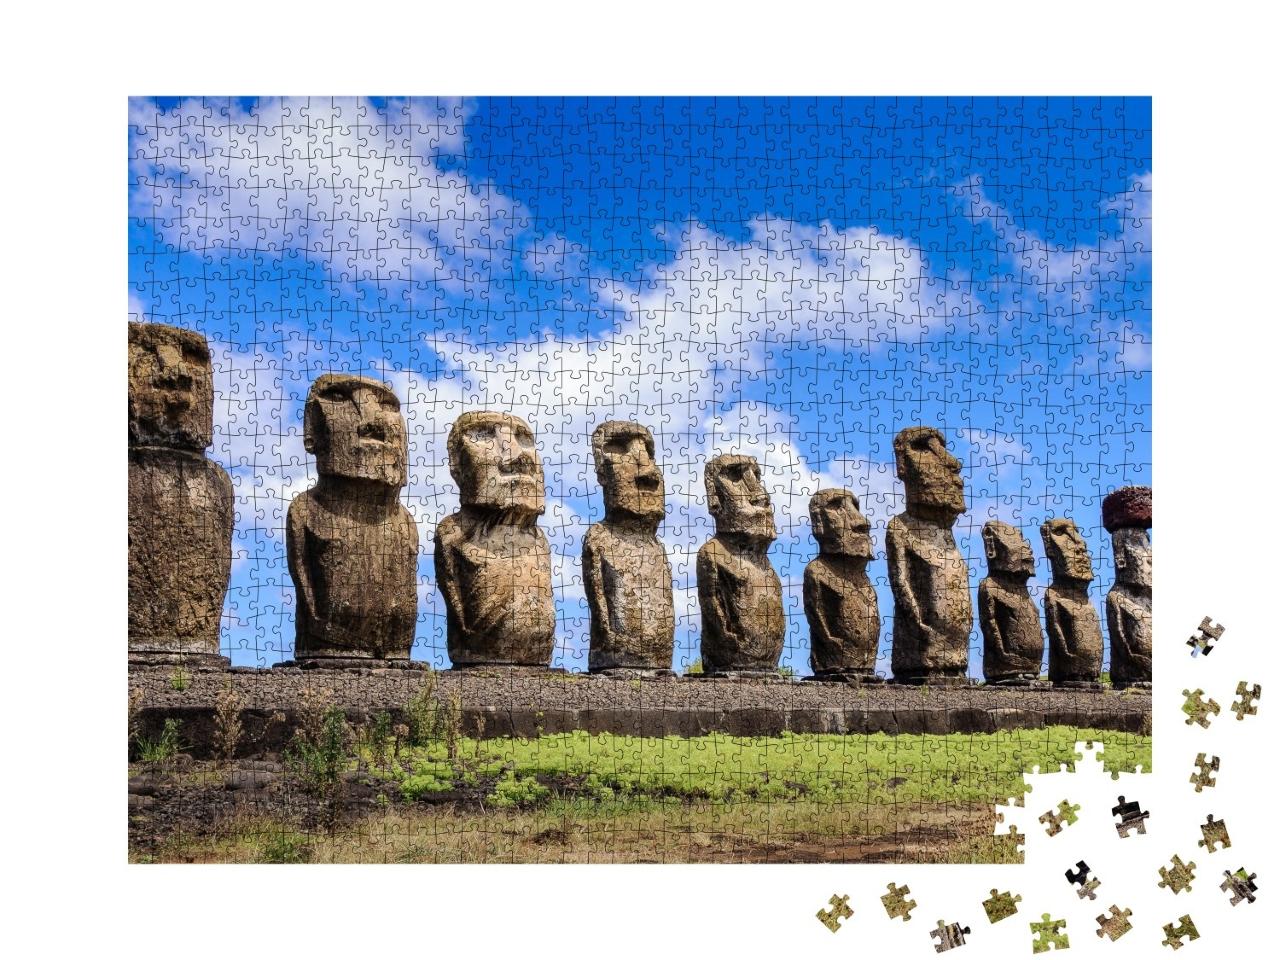 Puzzle de 1000 pièces « Figurines en pierre Moais de Ahu Tongariki, Île de Pâques, Chili »